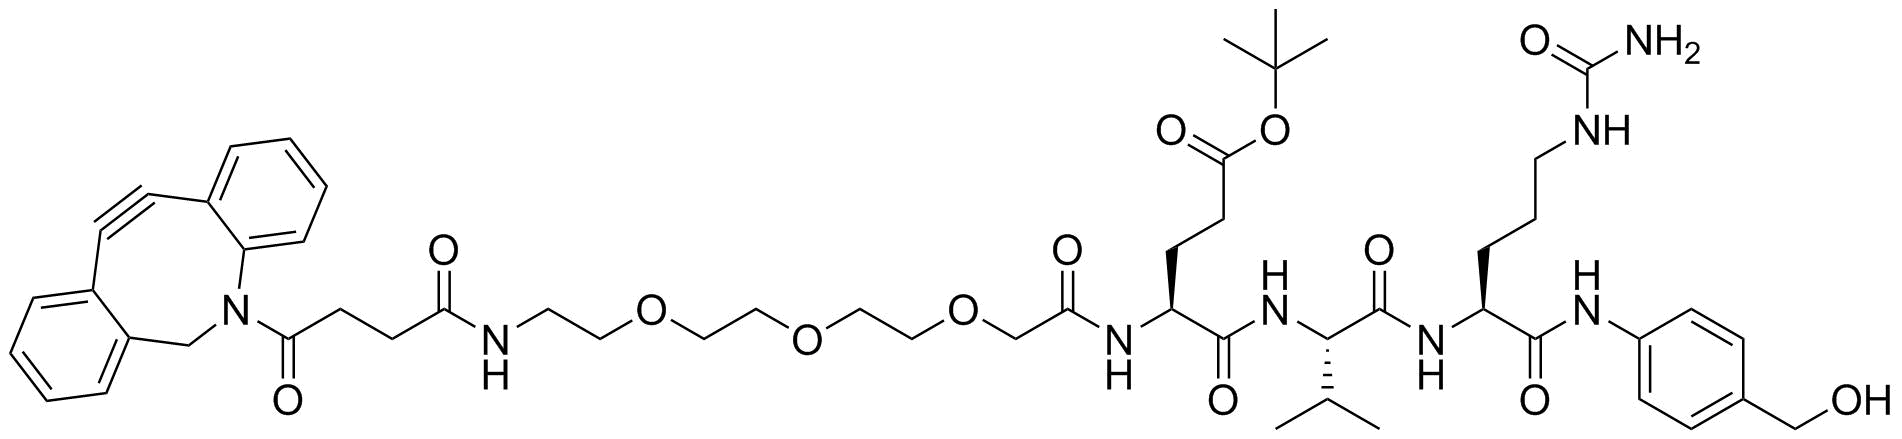 DBCO-PEG4 acetic-EVCit-PAB